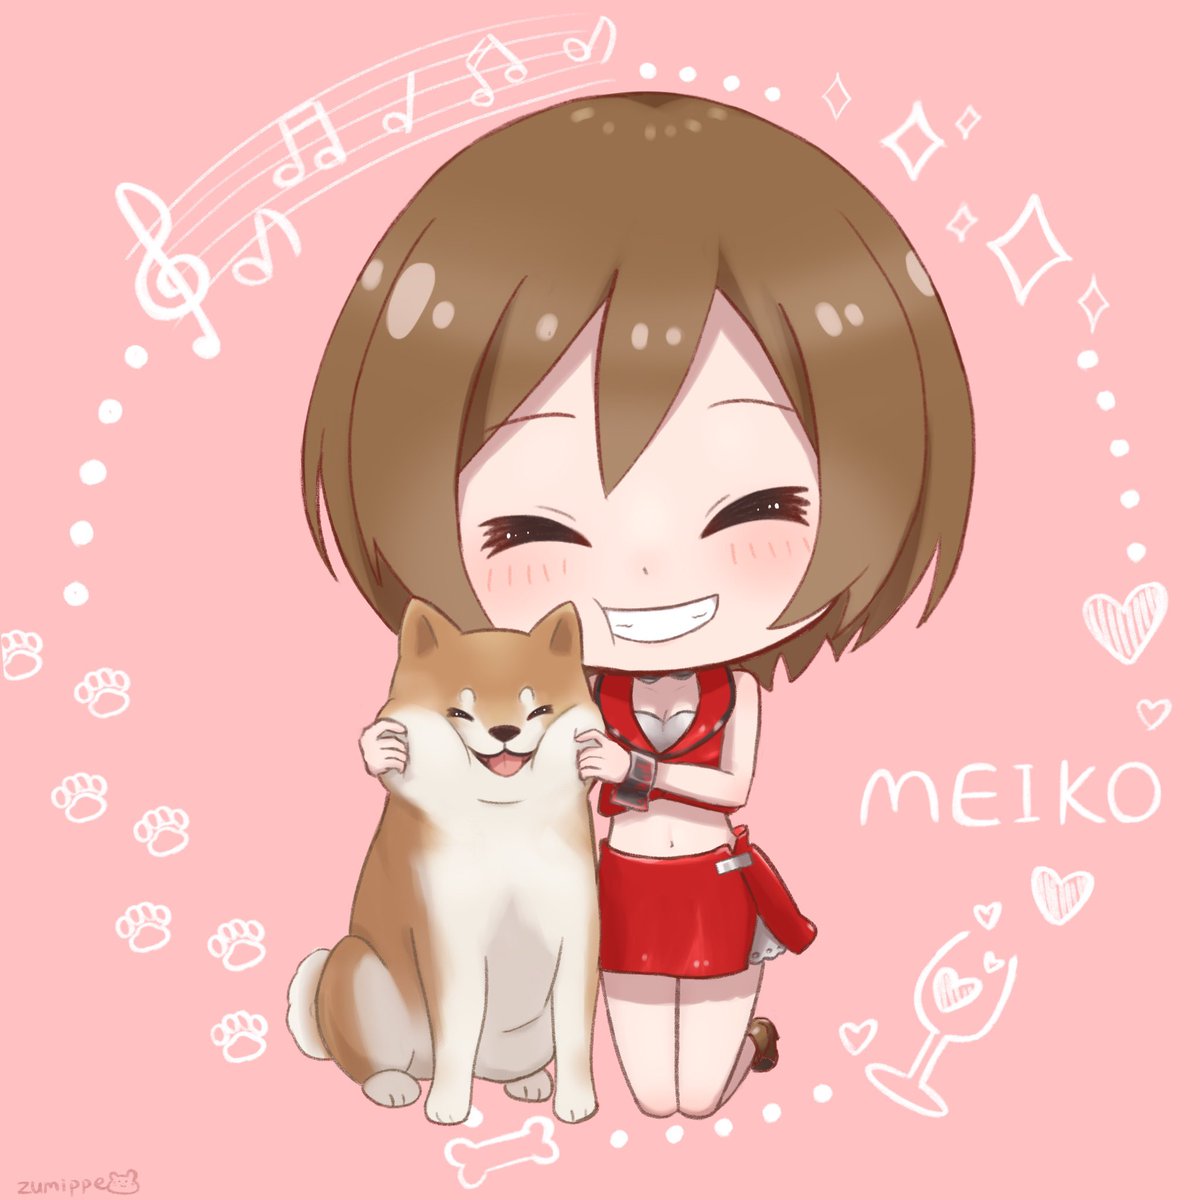 メイコ(VOCALOID) 「#MEIKO #MEIKO生誕祭2022 #MEIKO誕生祭2022#MEIKO」|ずみっぺ🐹のイラスト